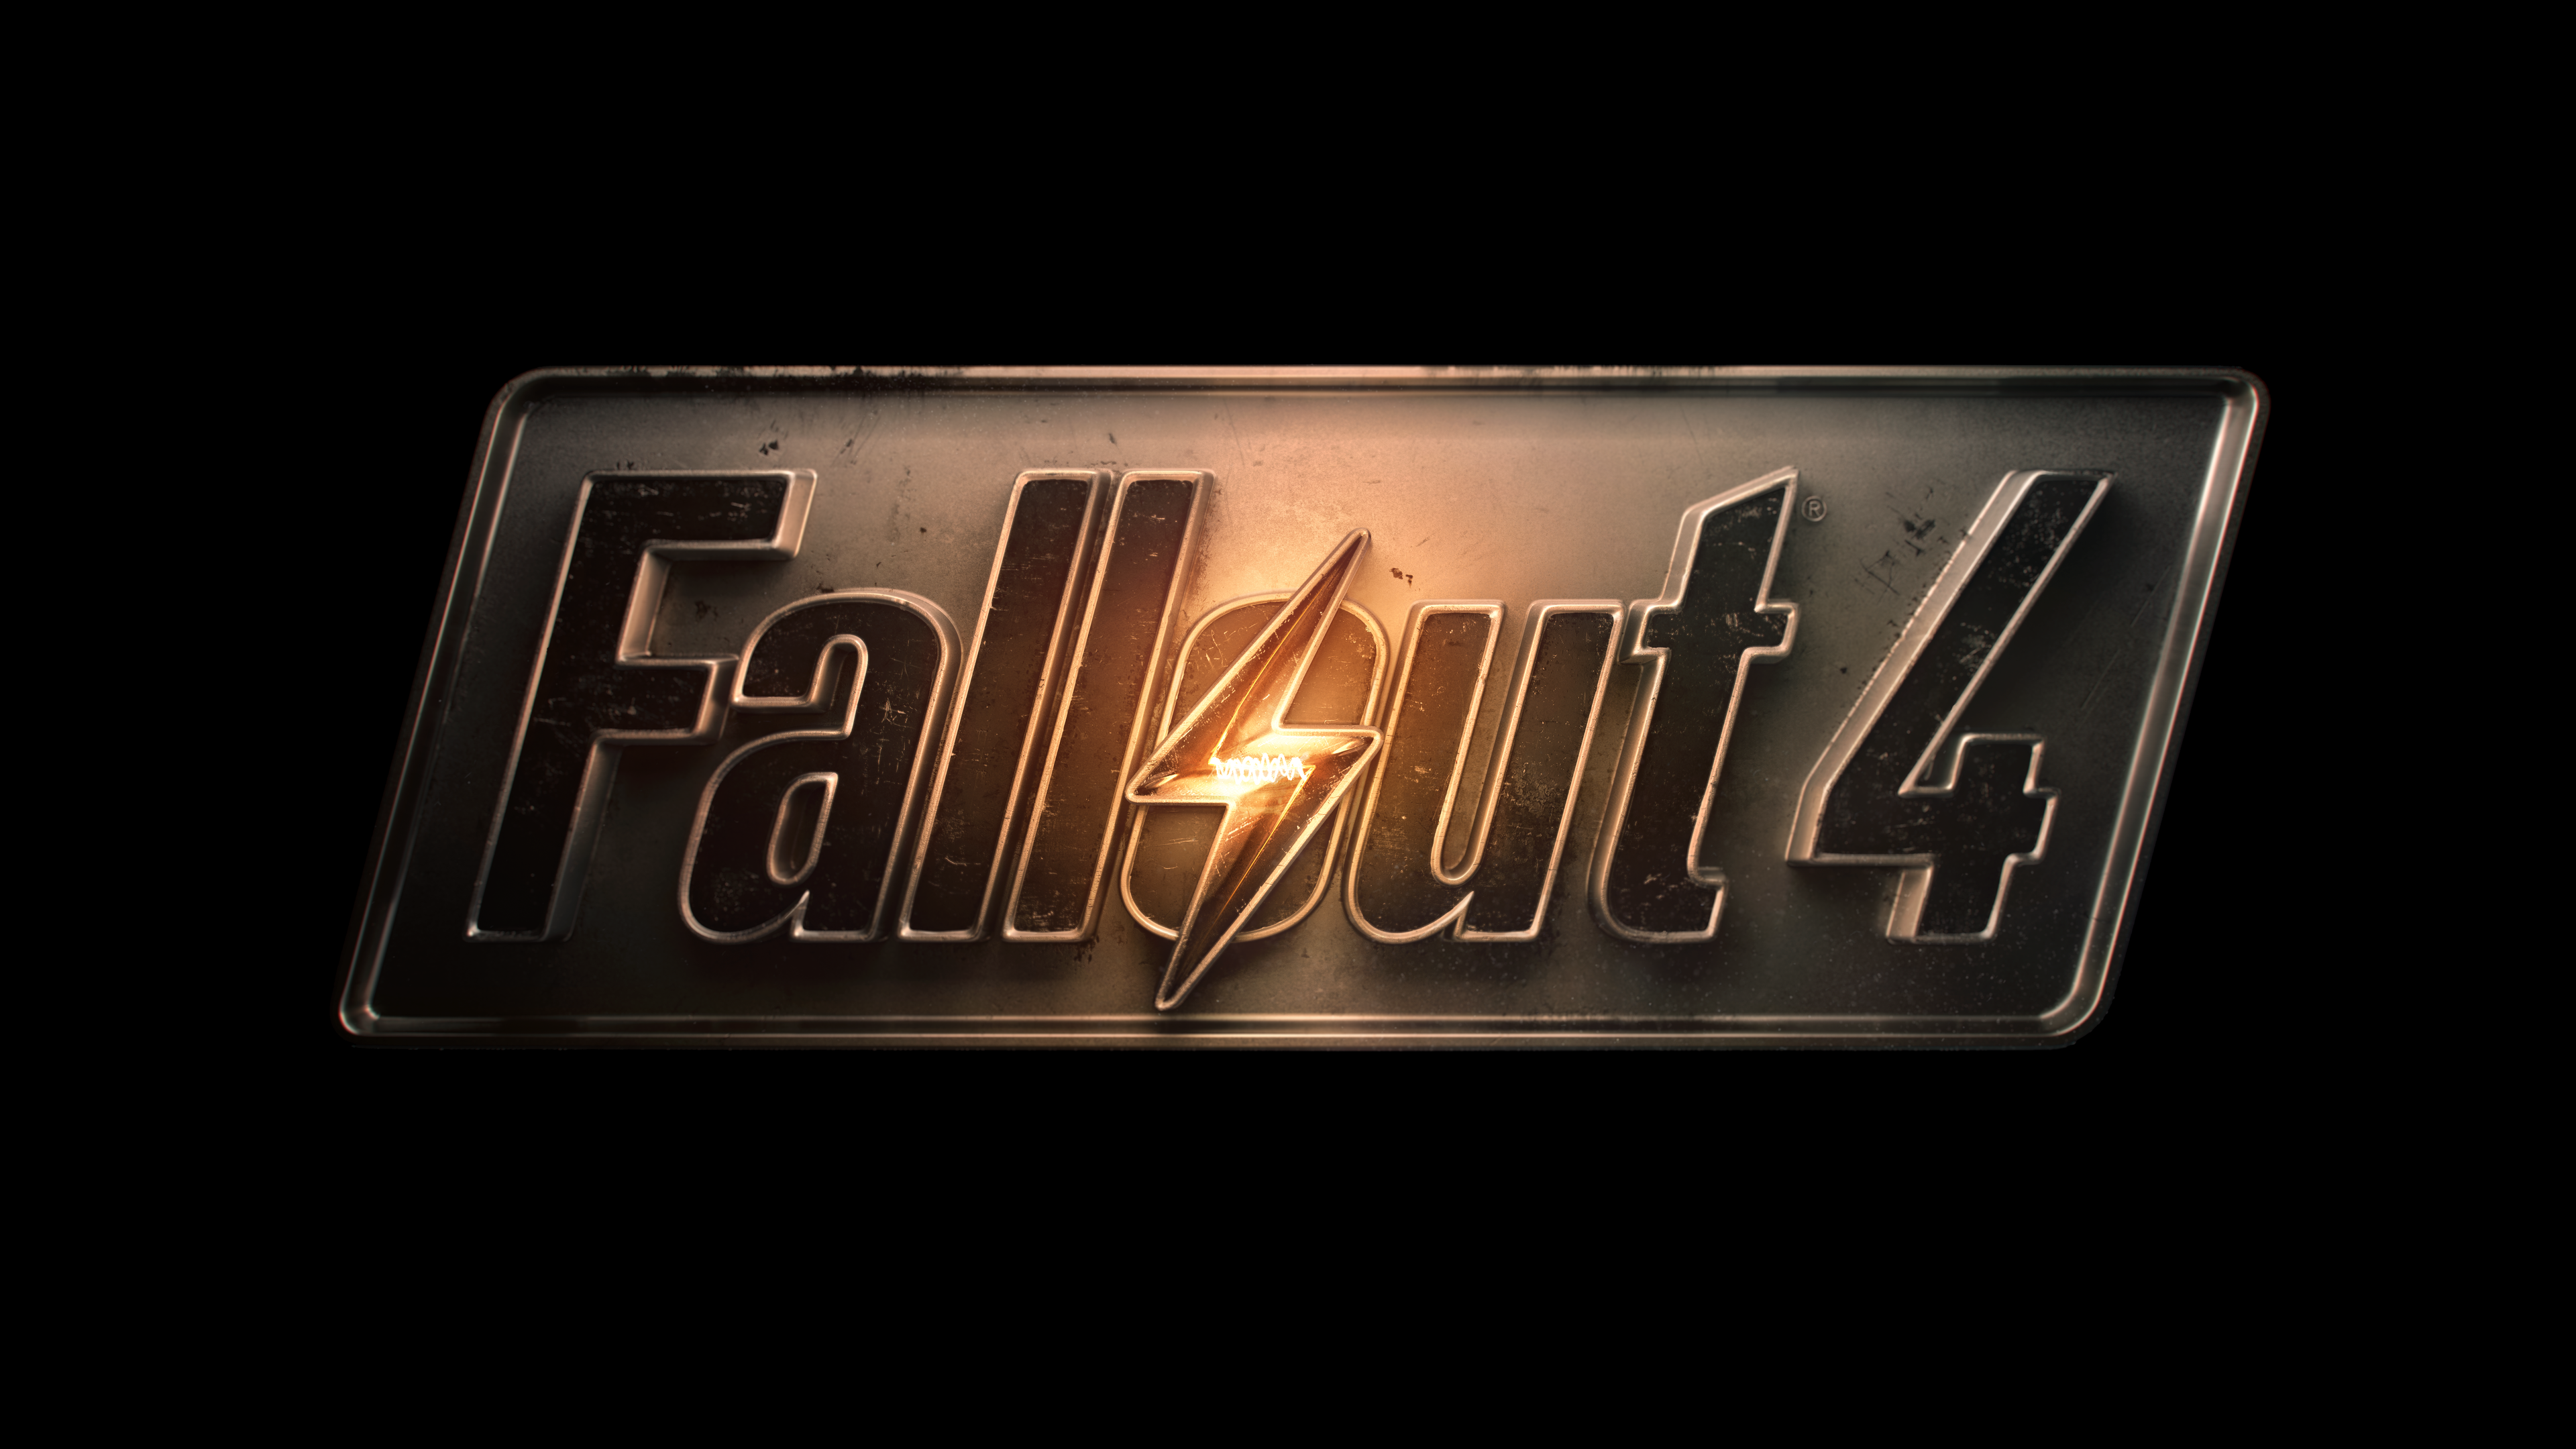 Nine hours into Fallout 4, Iu